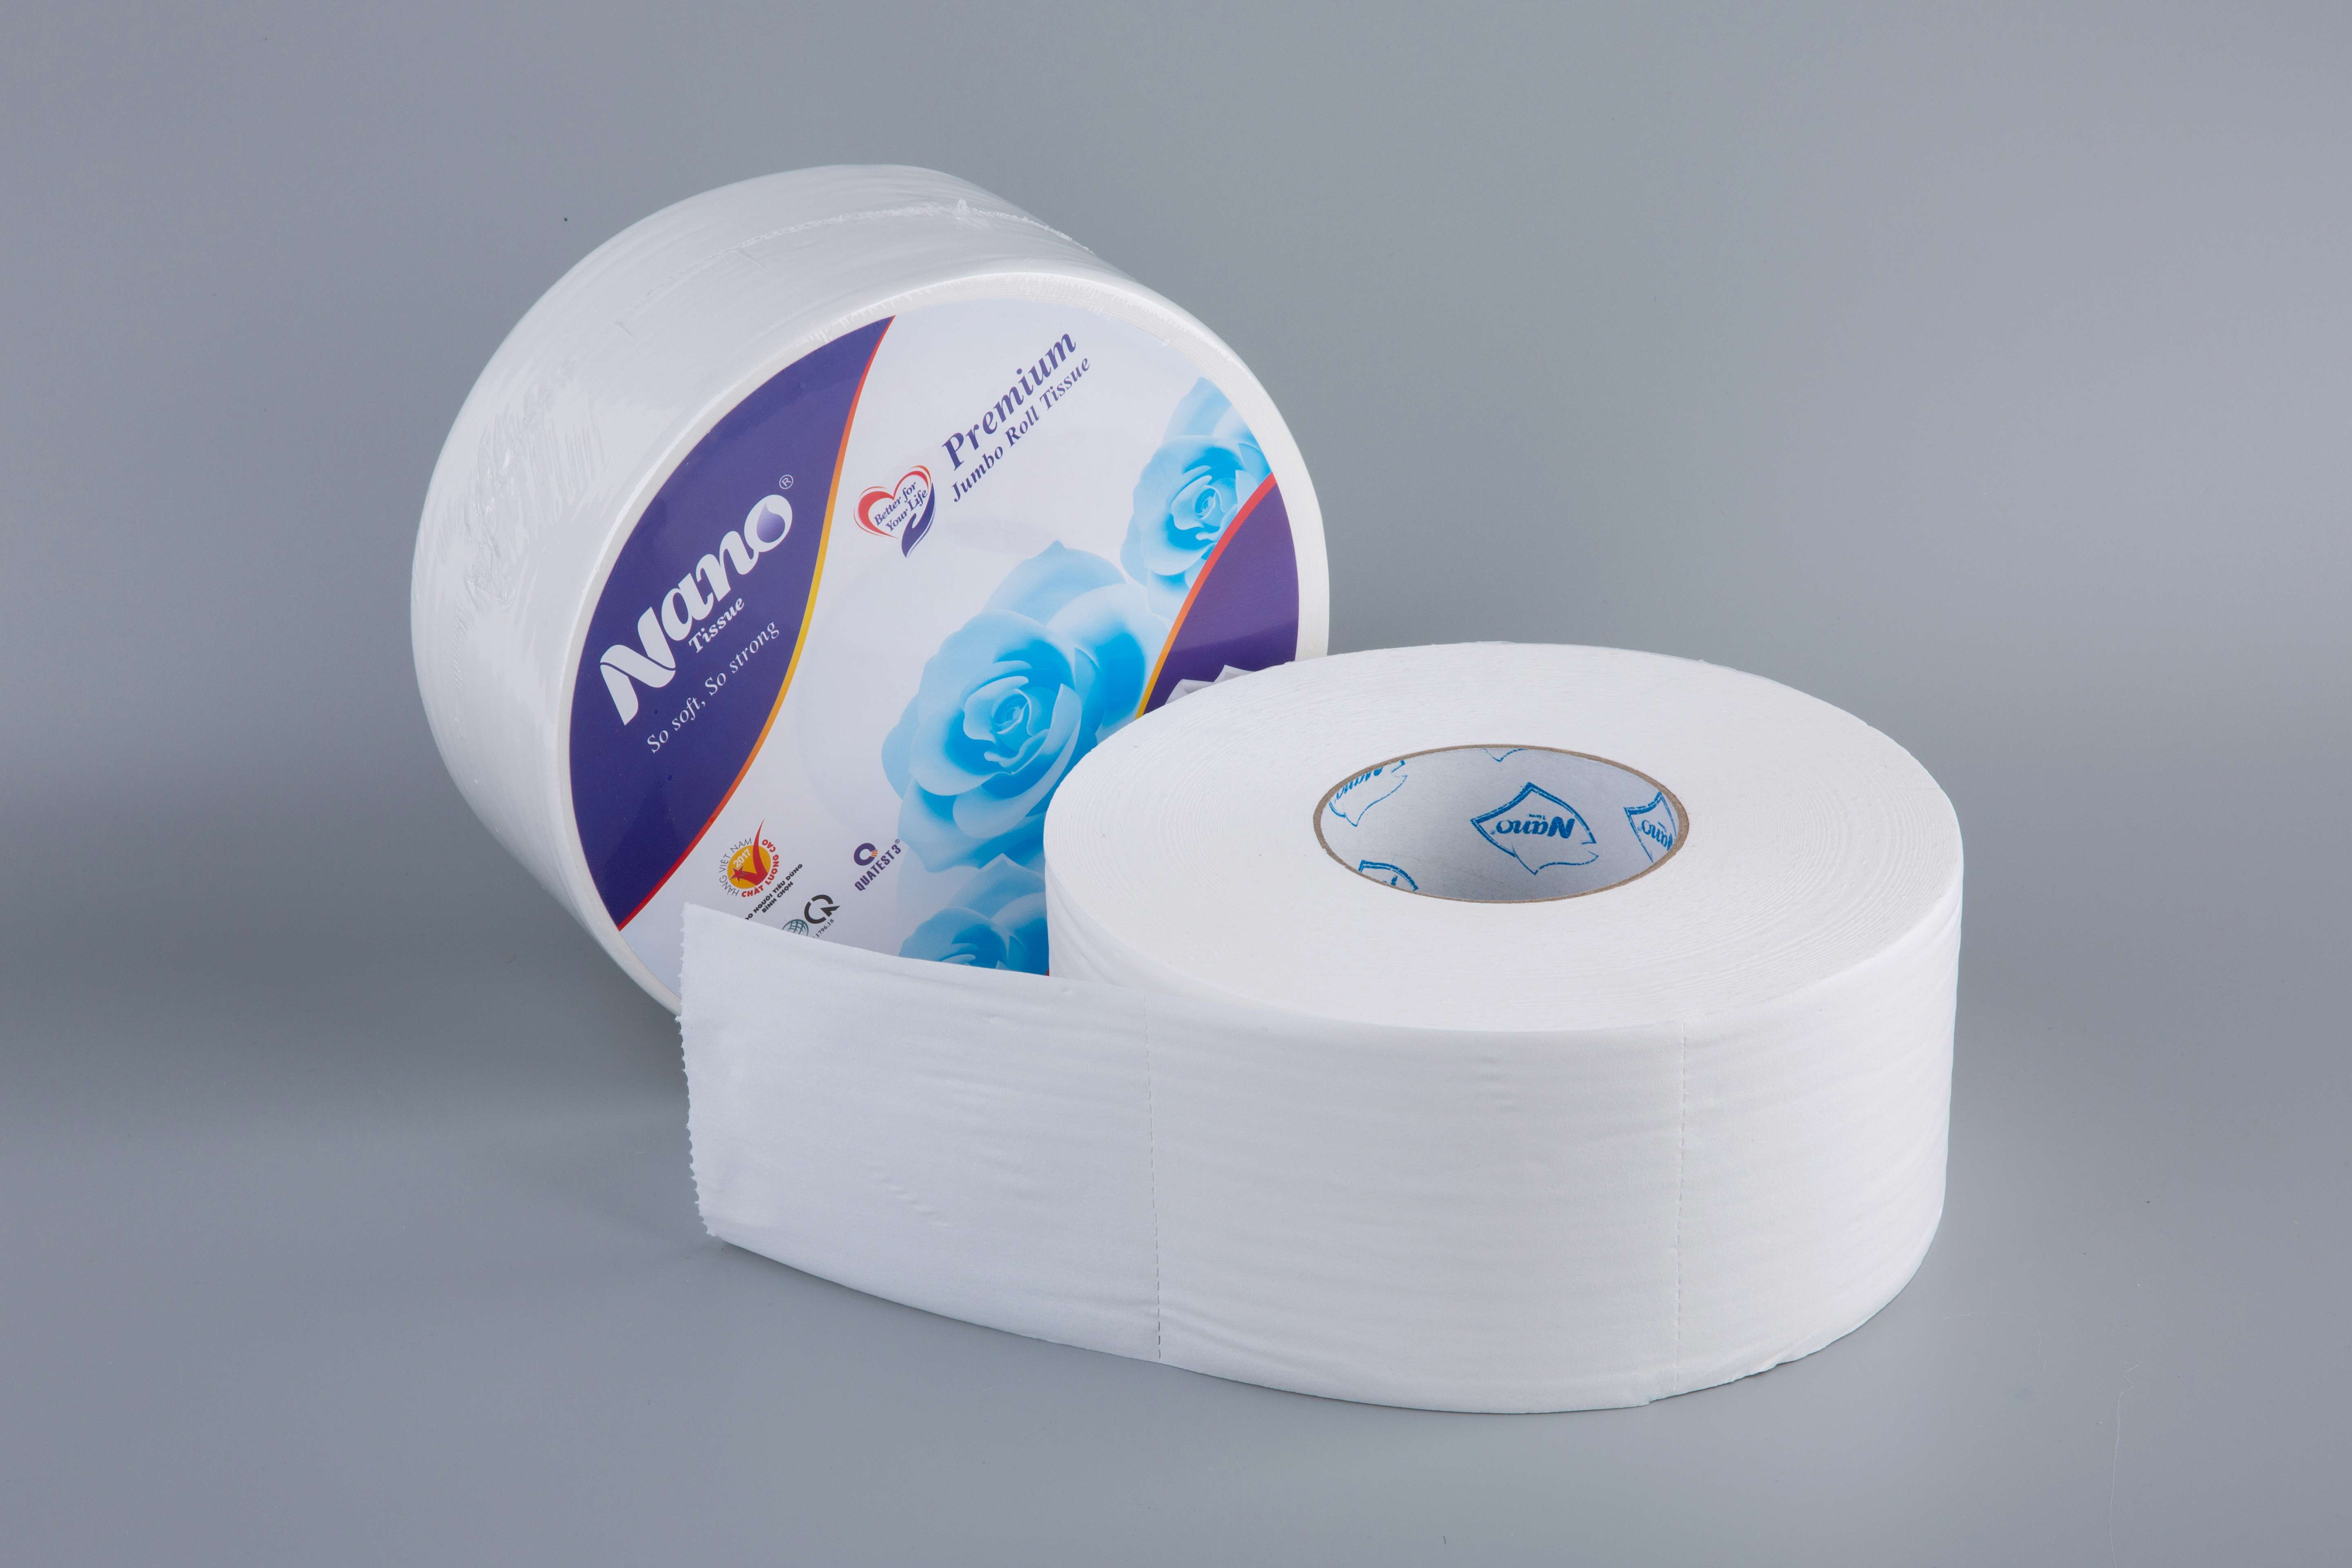 [MUA 5 TẶNG 1] Combo 5 cuộn giấy vệ sinh Nano loại lớn 700g, giấy 2 lớp dày dặn, không vụn giấy, an toàn khi sử dụng - Nano Tissue